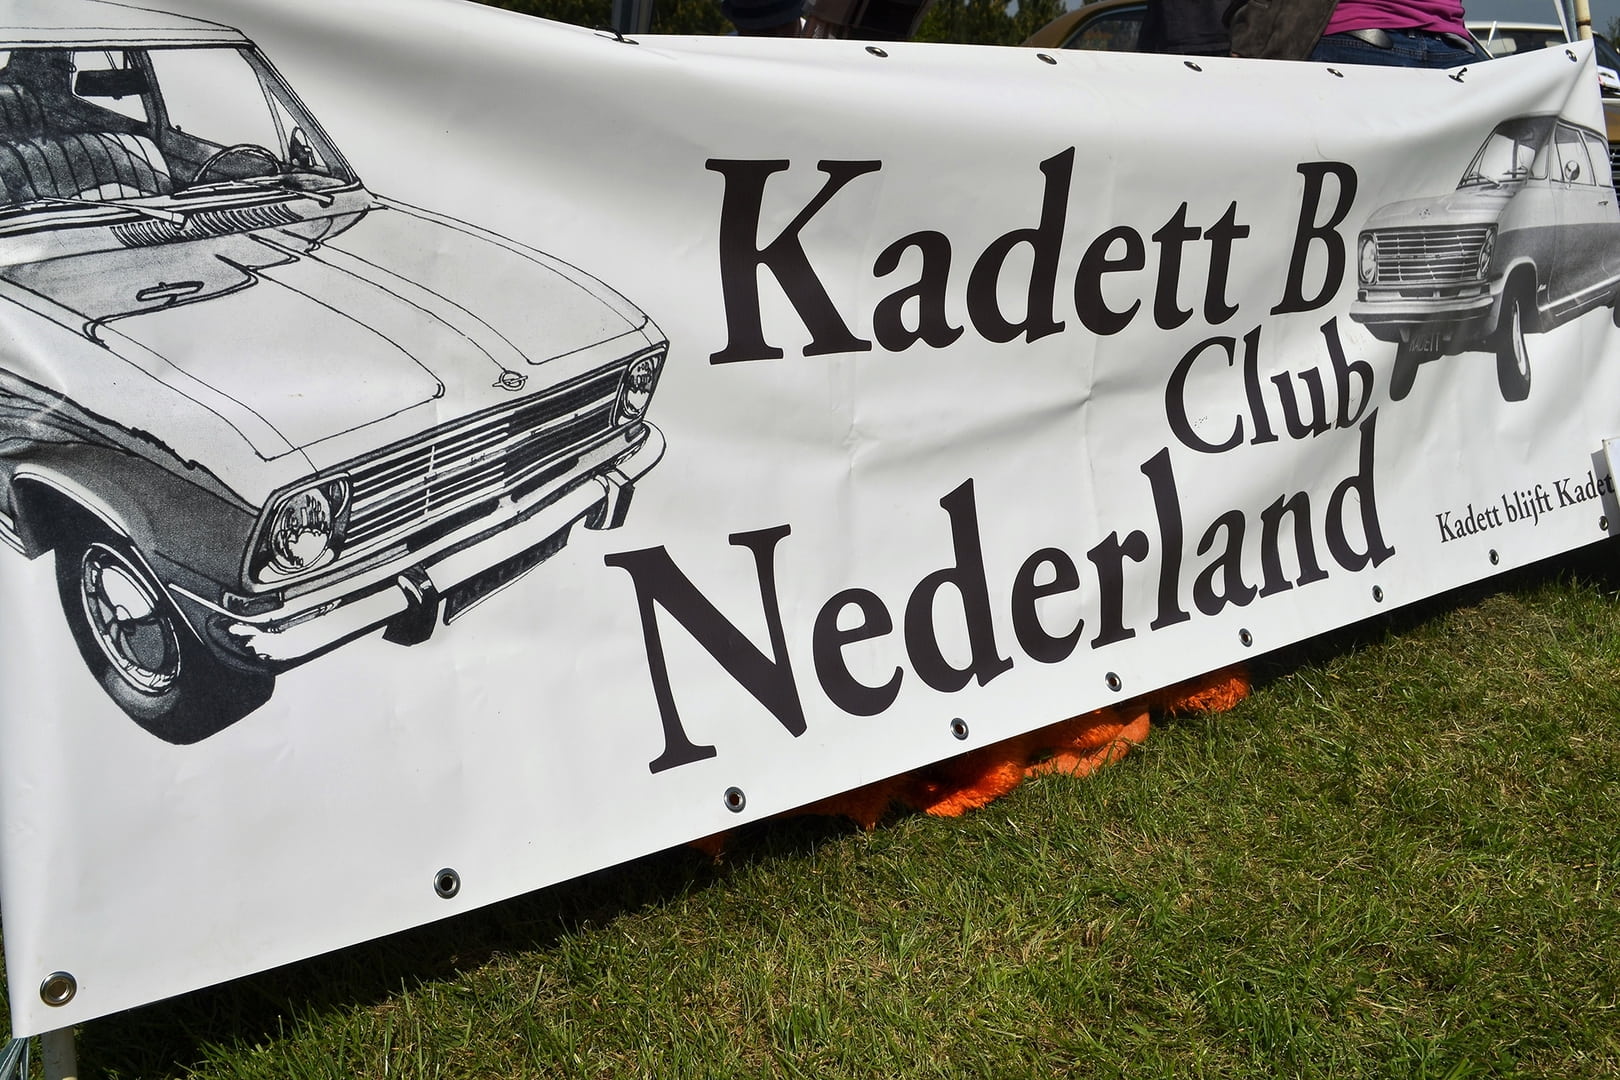 <<< Holland Kadett-B Club foto_002 >>>